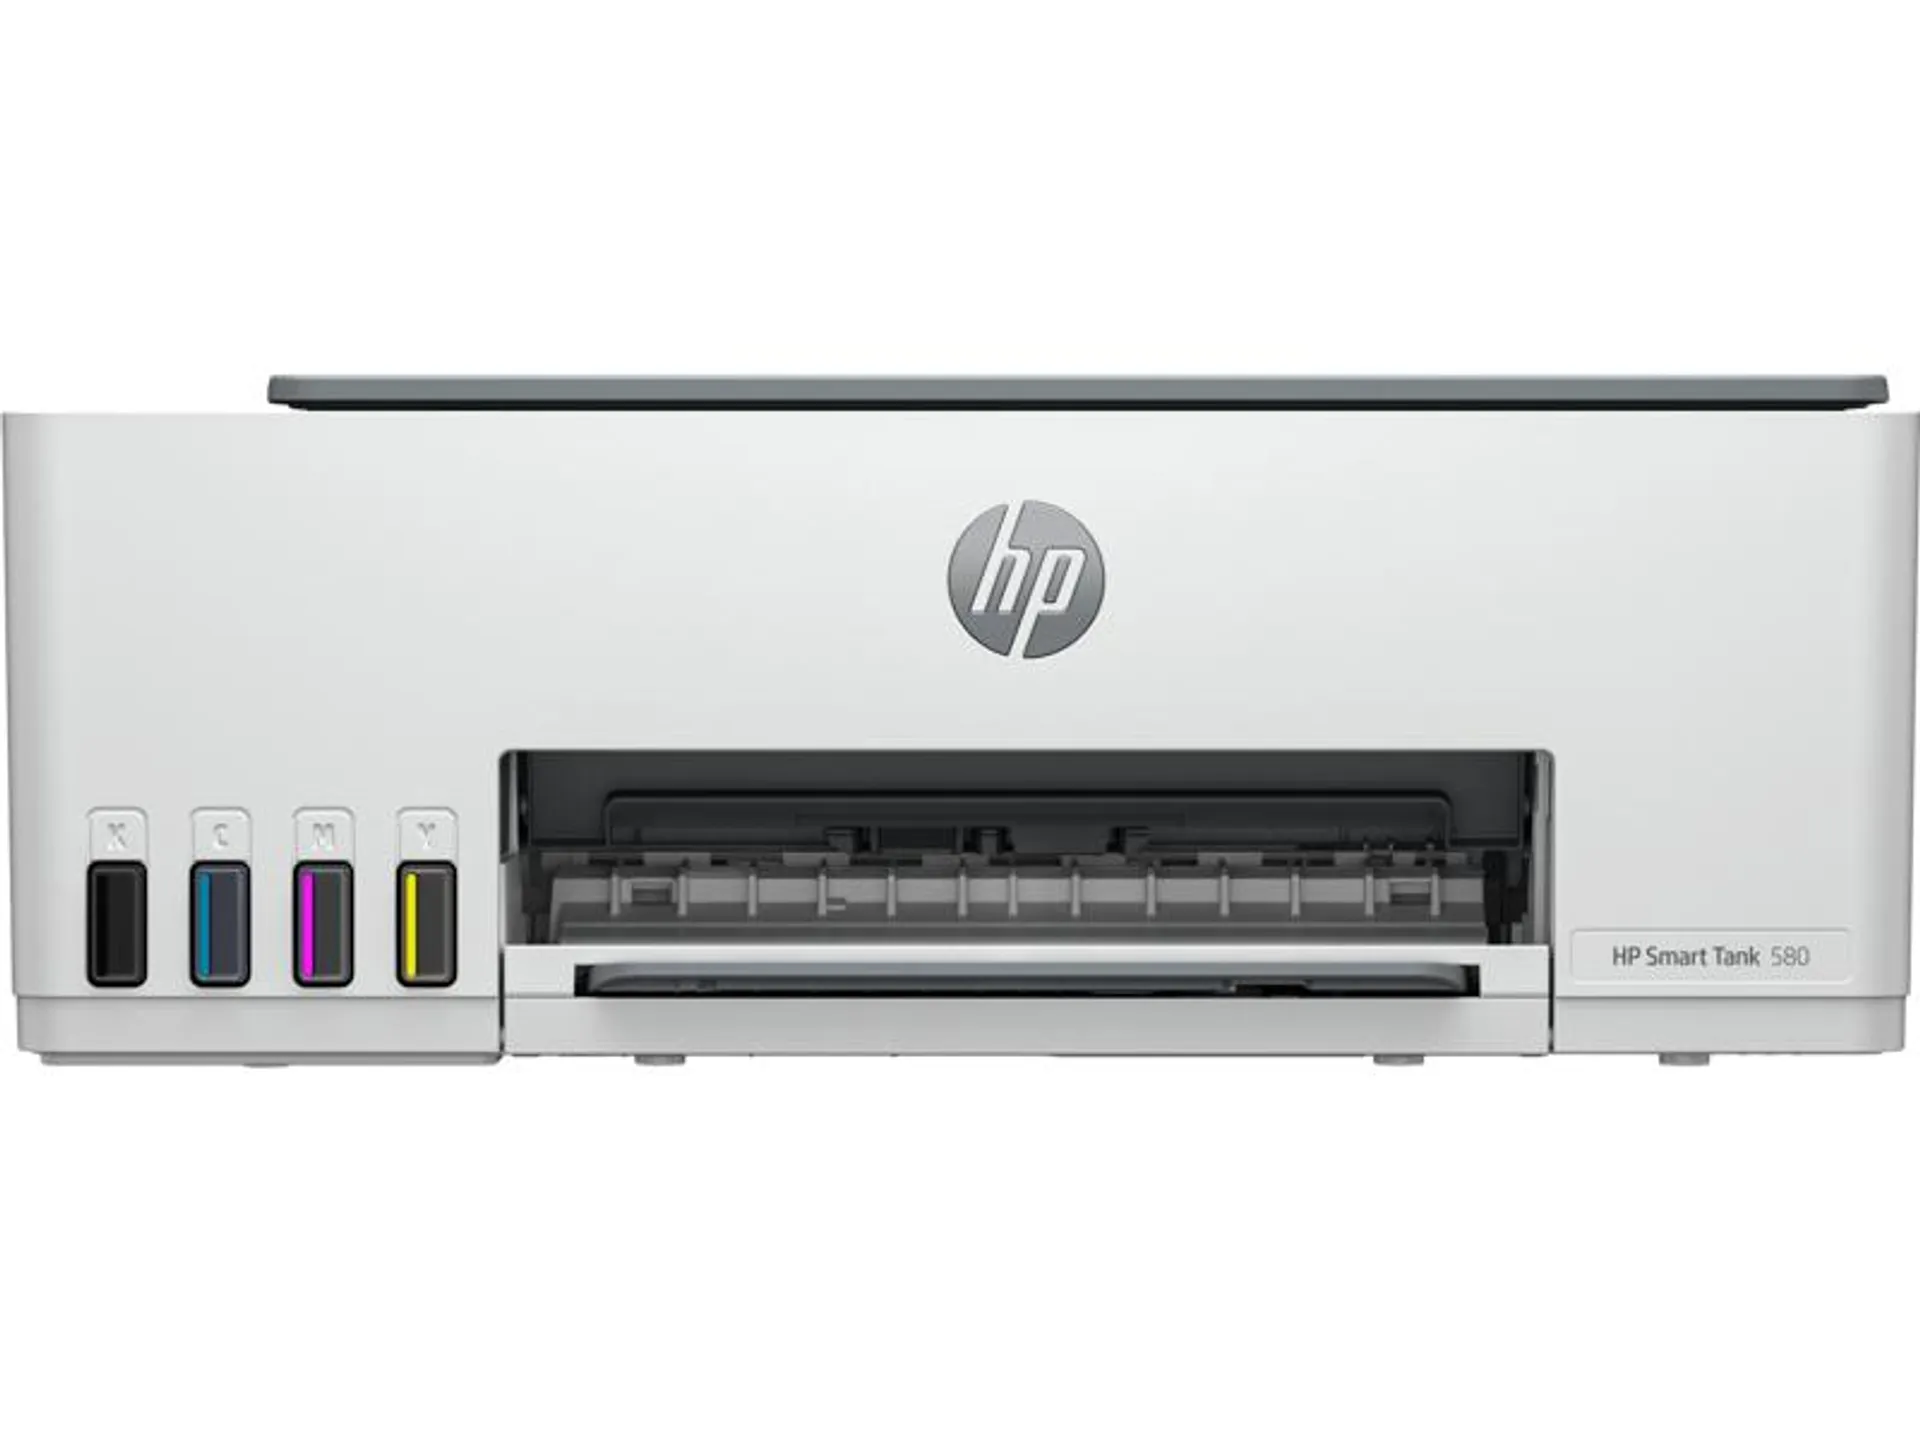 Hp - Impresora Multifunción 580 | Blanco